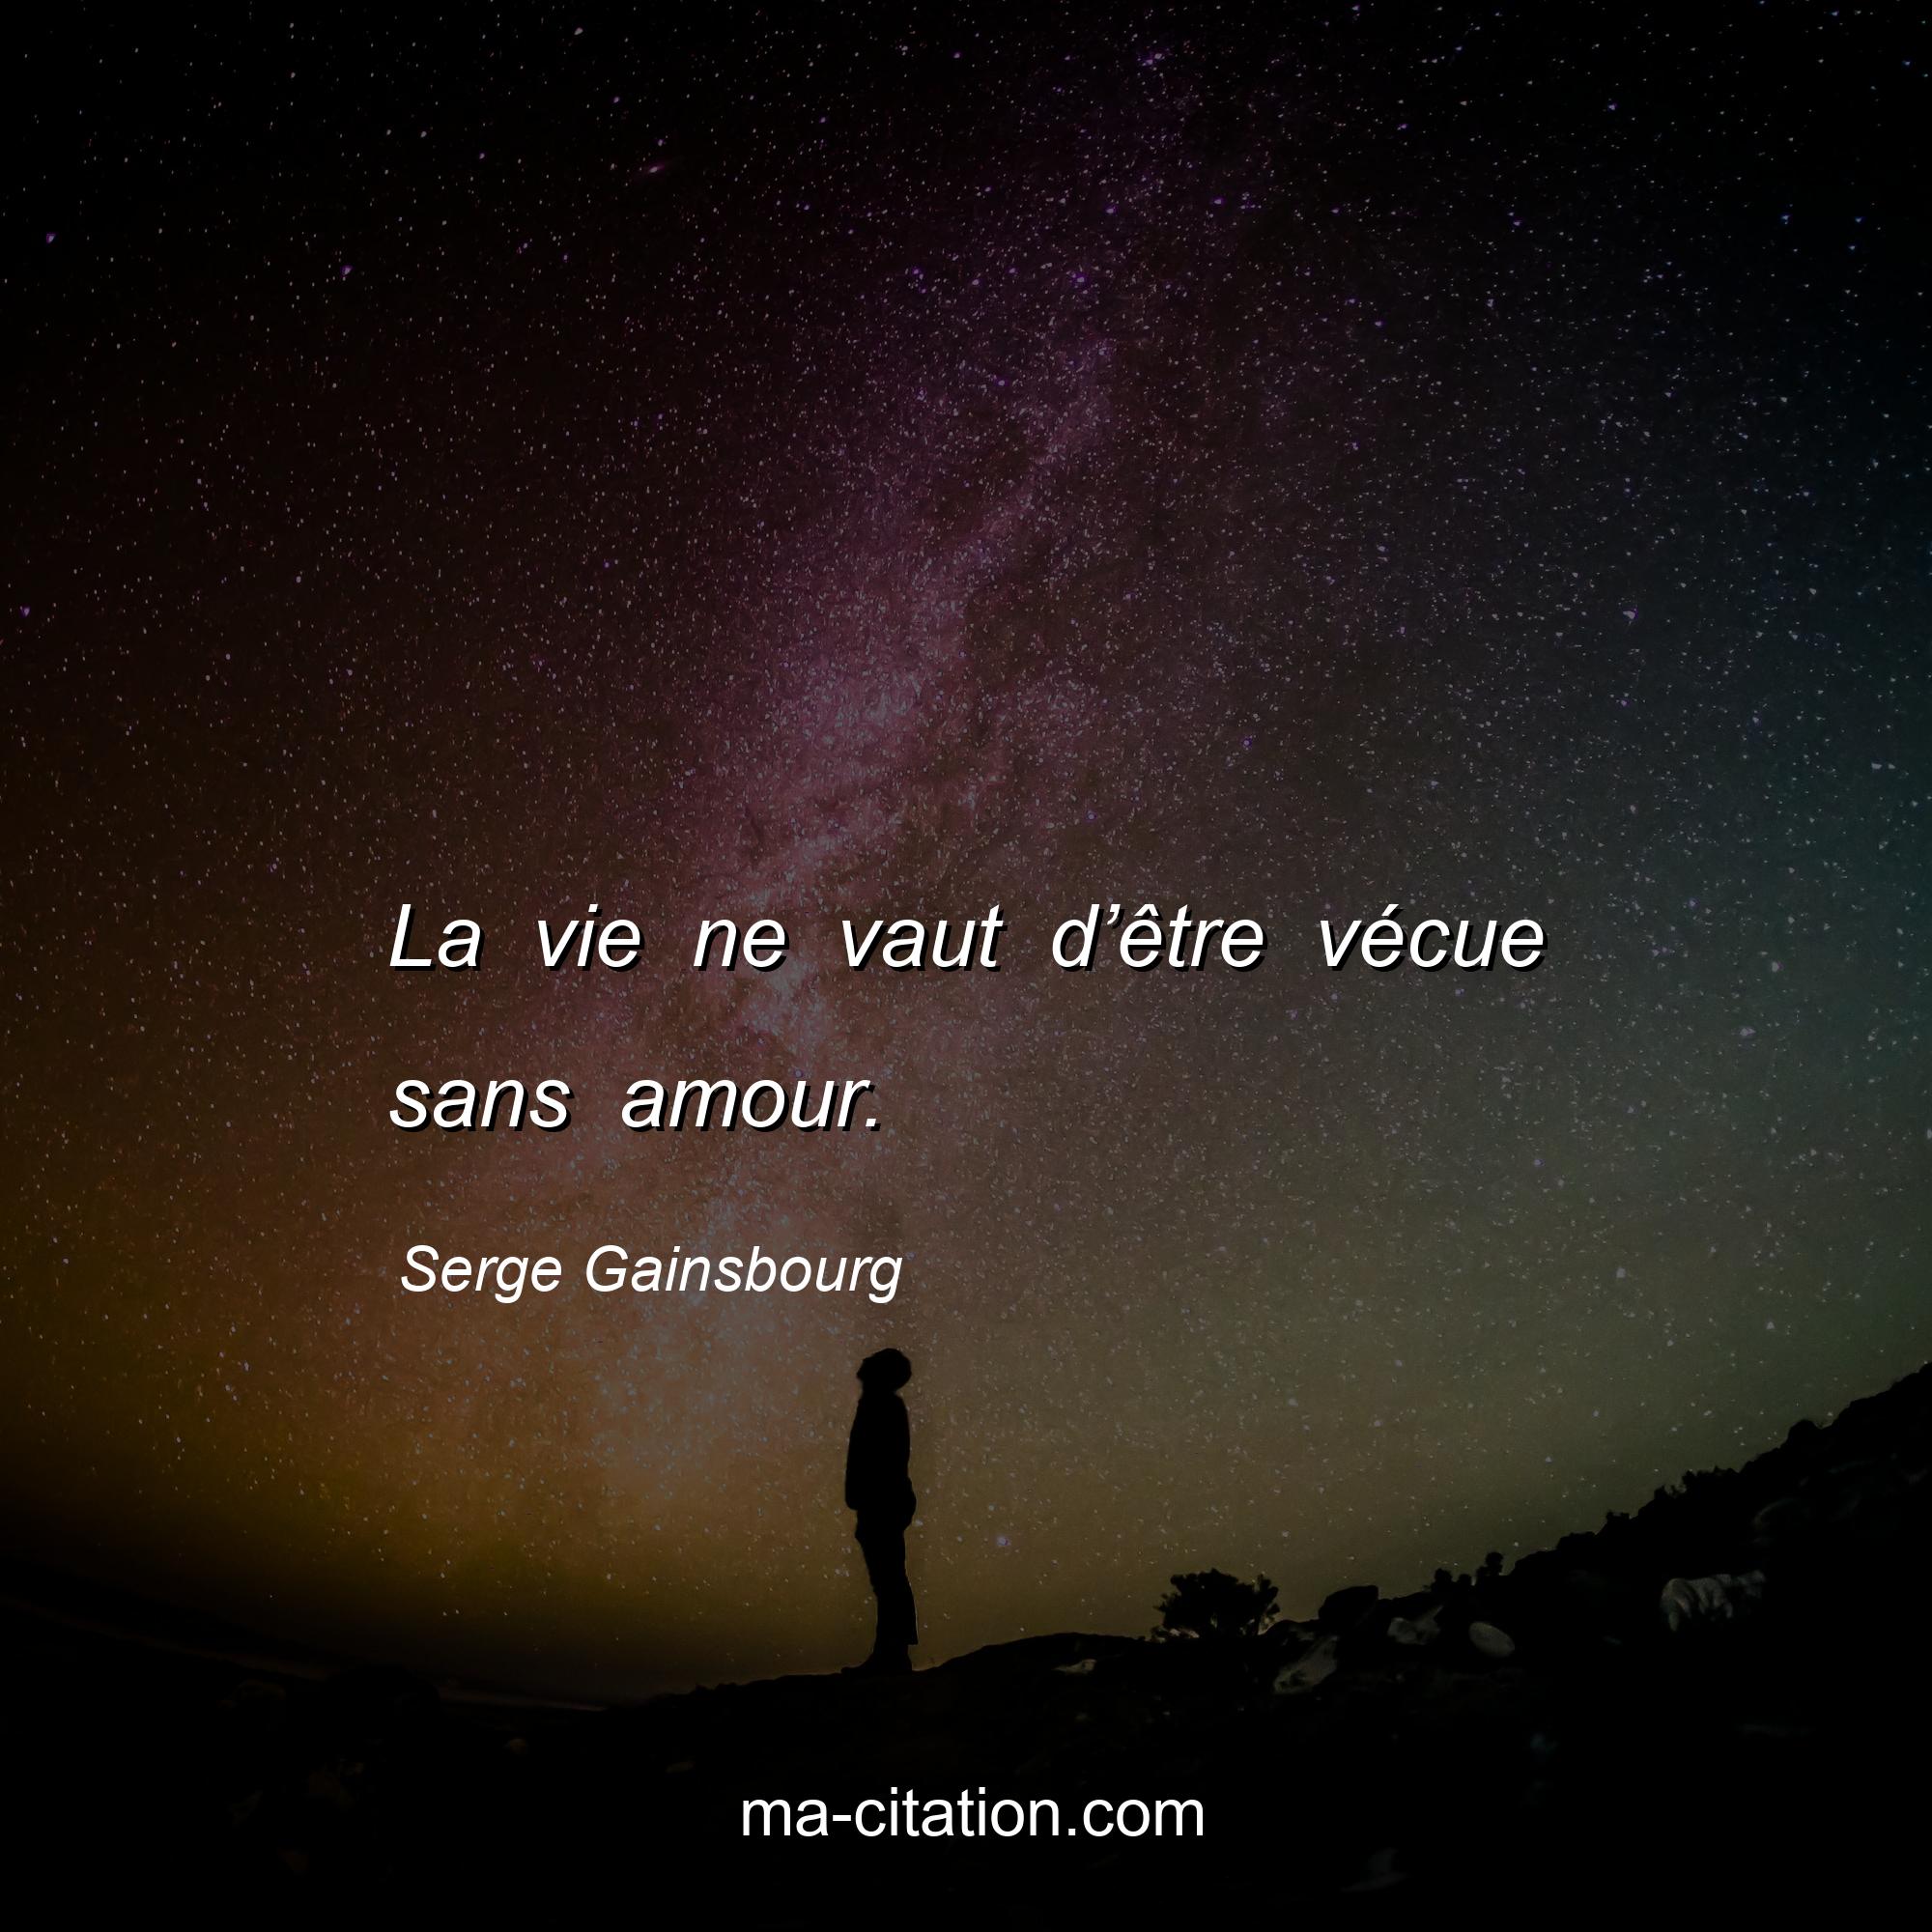 Serge Gainsbourg : La vie ne vaut d’être vécue sans amour.